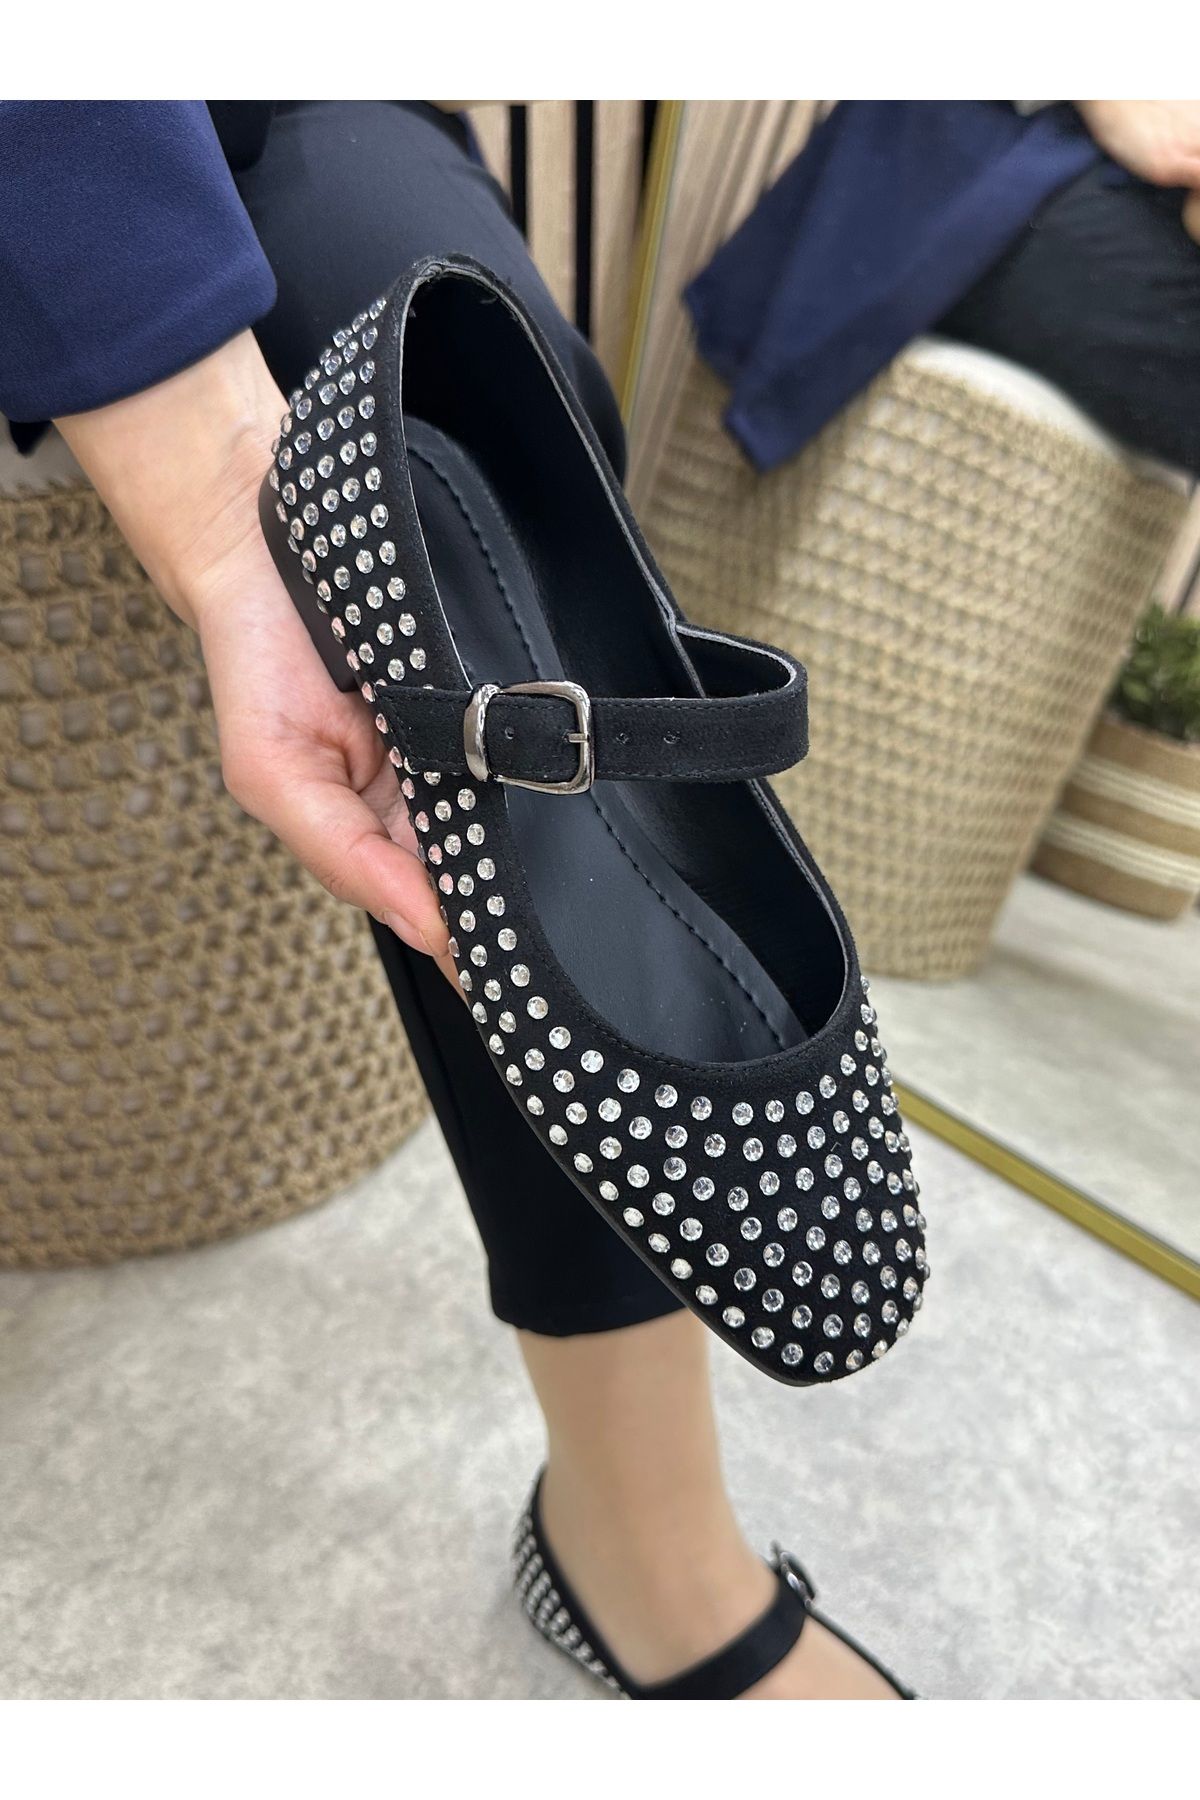 İmerShoes Günlük Kadın Taşlı Siyah Süet Babet Tokalı Alçak Topuklu Yumuşak Rahat Ayakkabı 287